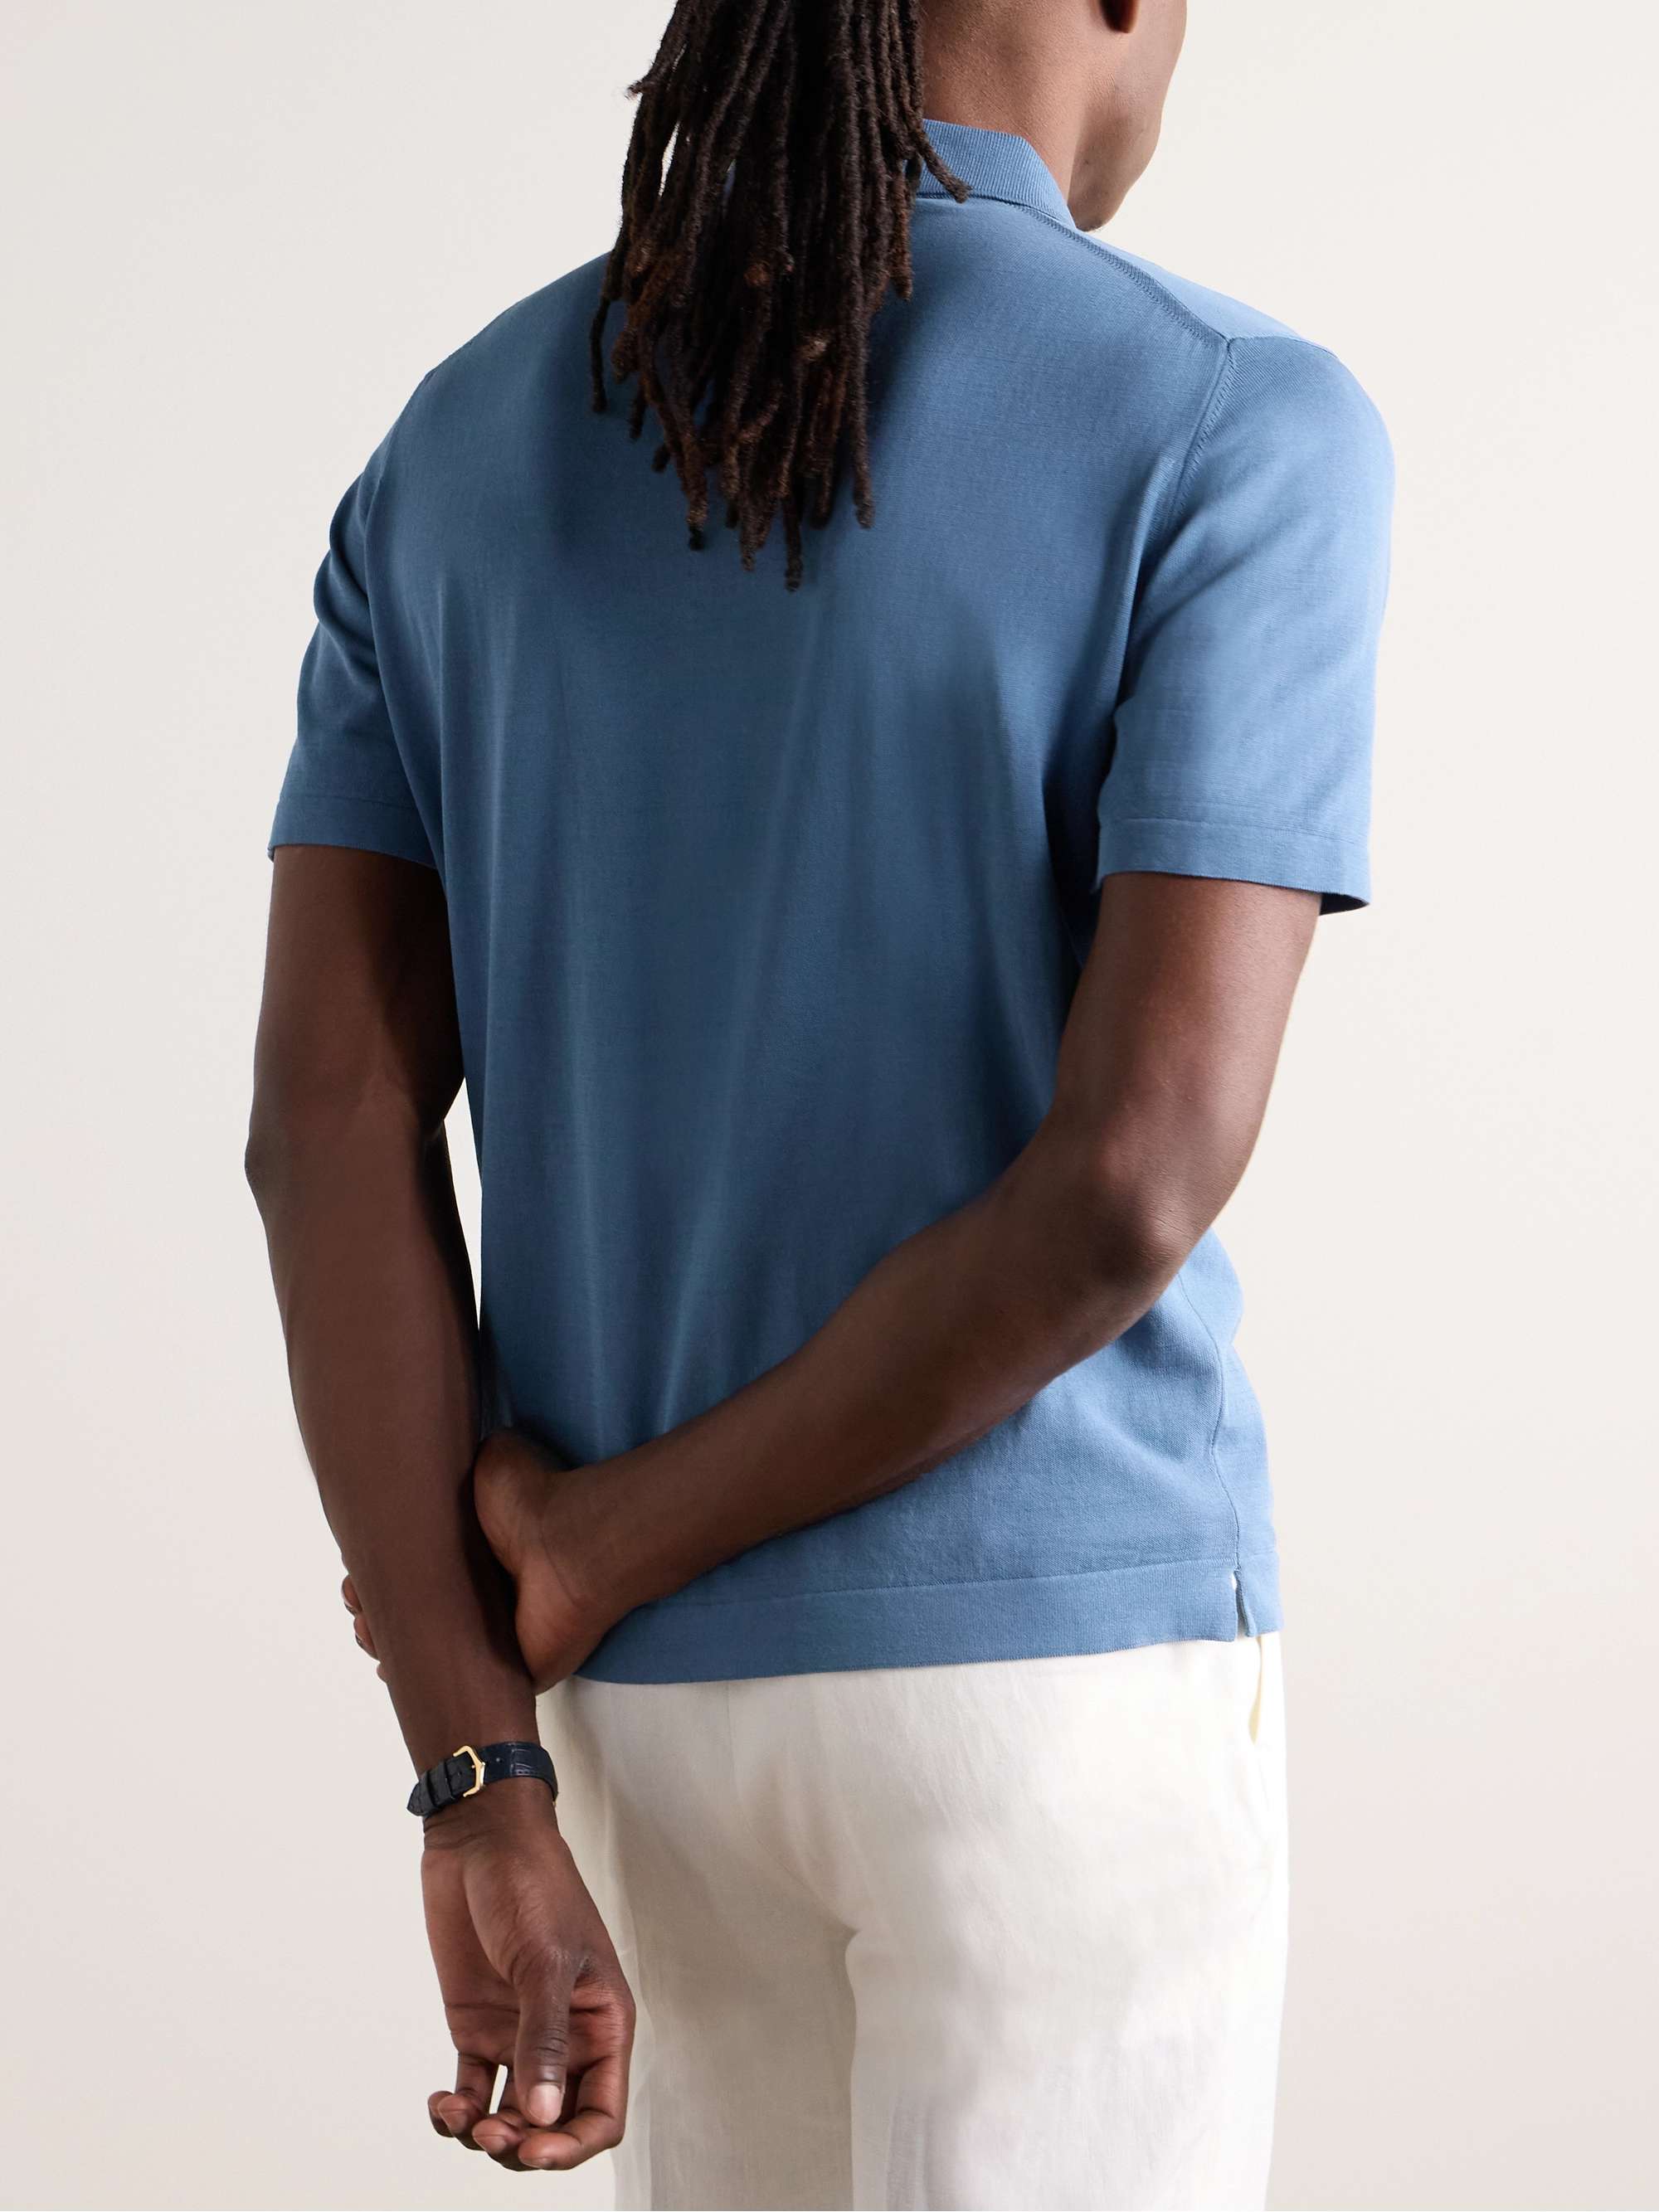 DE PETRILLO Cotton Polo Shirt for Men | MR PORTER